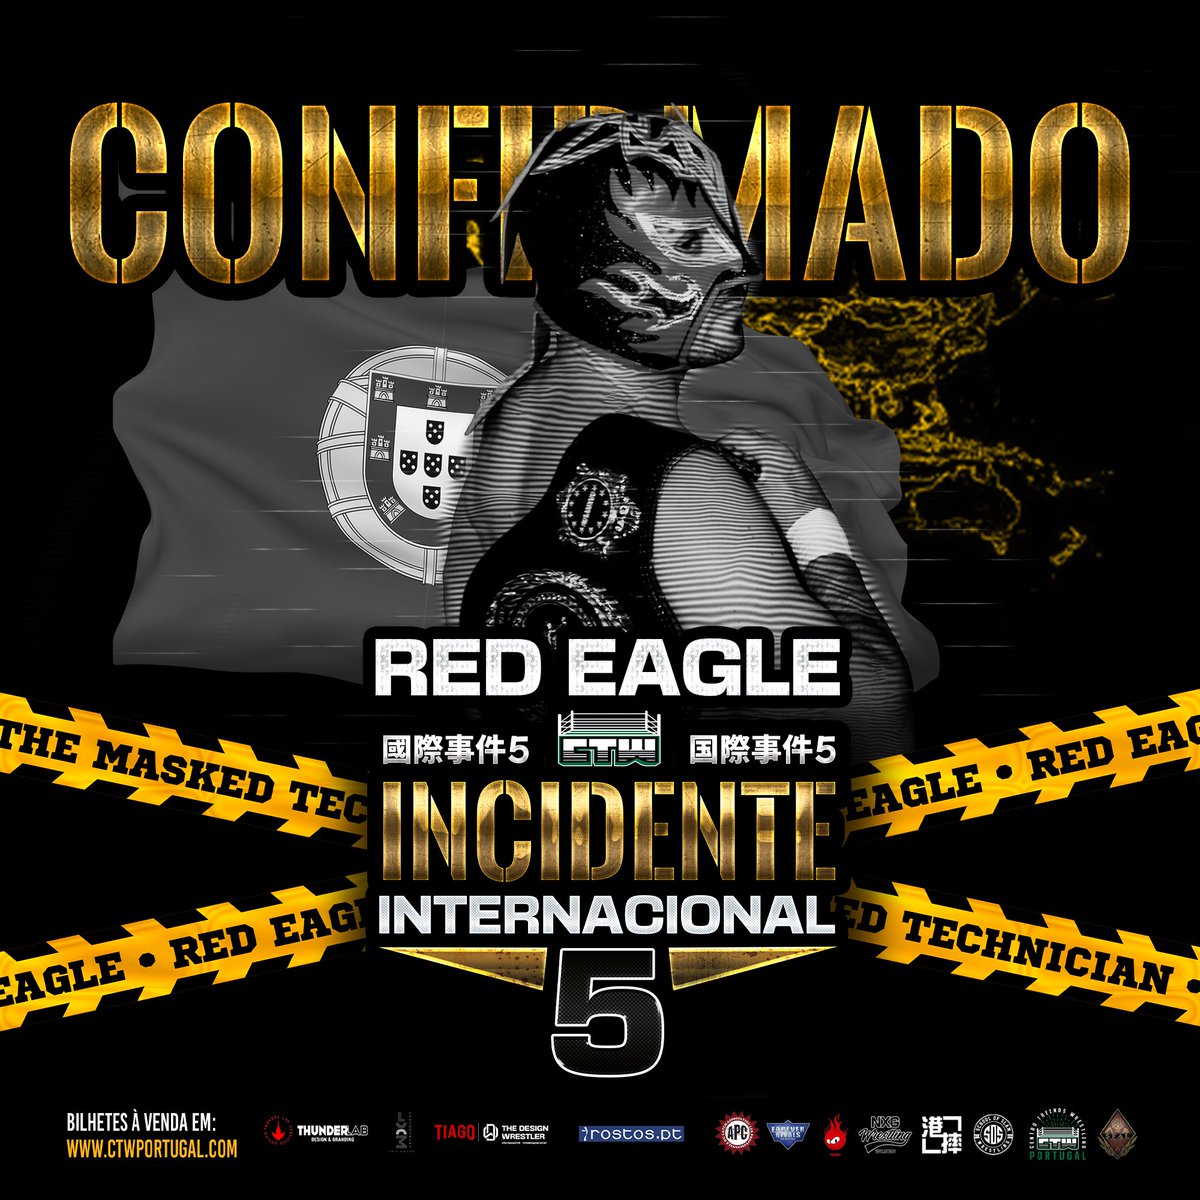 Red Eagle está confirmado para o Incidente Internacional 5‼️🇵🇹 Não percas esta oportunidade de ver Red Eagle em ação! Compra já o teu bilhete em: ctwportugal.com 🎟️🎫 @RedEagle_PT #prowrestling #wrestling #lisboa #uk #japan #portugal #heatuppw #ctwportugal